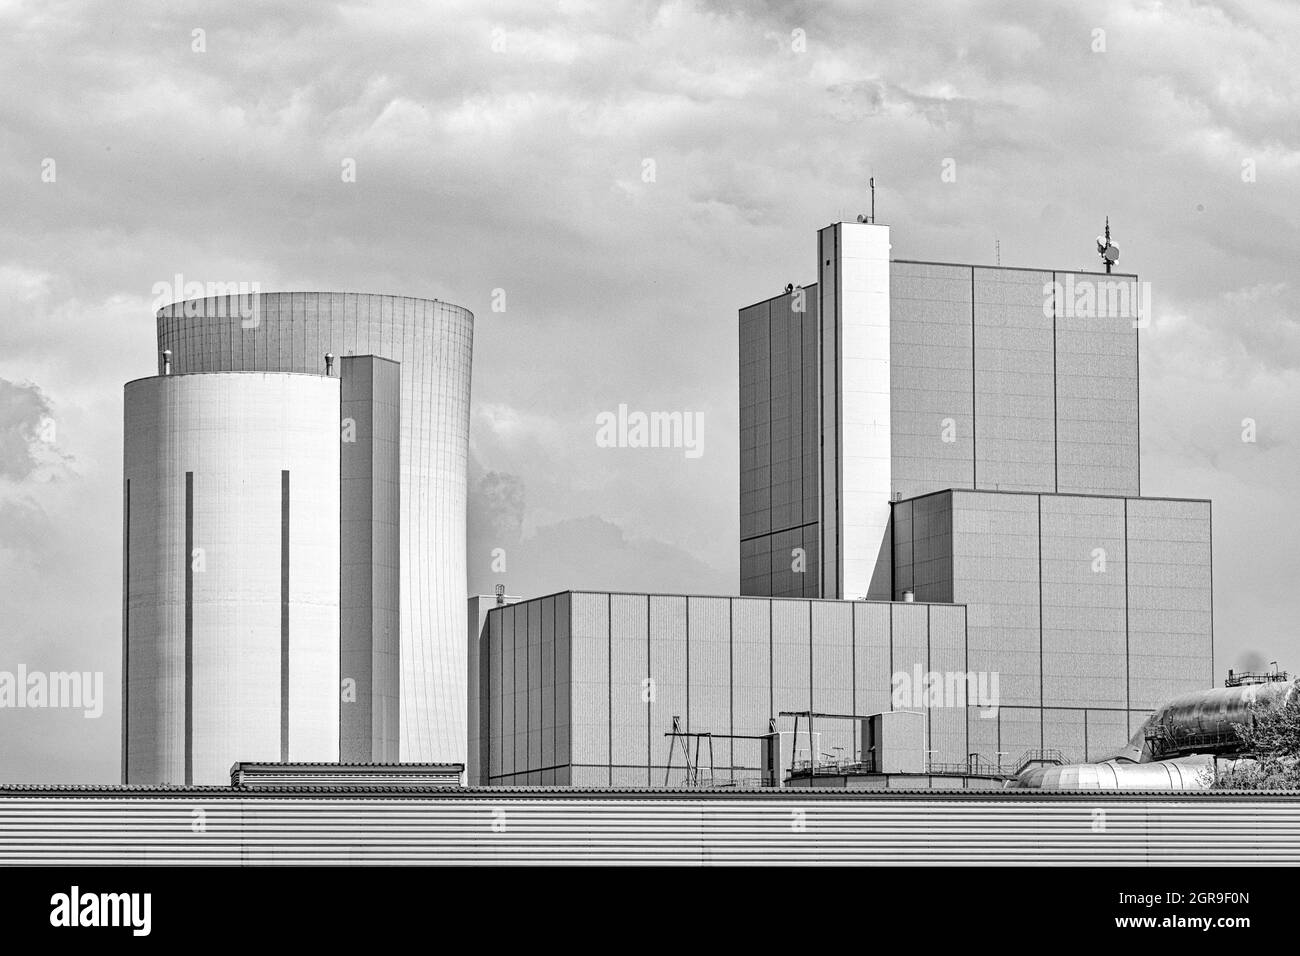 HERN, DEUTSCHLAND - 31. Aug 2021: Eine wunderschöne Schwarz-Weiß-Aufnahme des Kohlekraftwerks STEAG in Herne, Deutschland Stockfoto